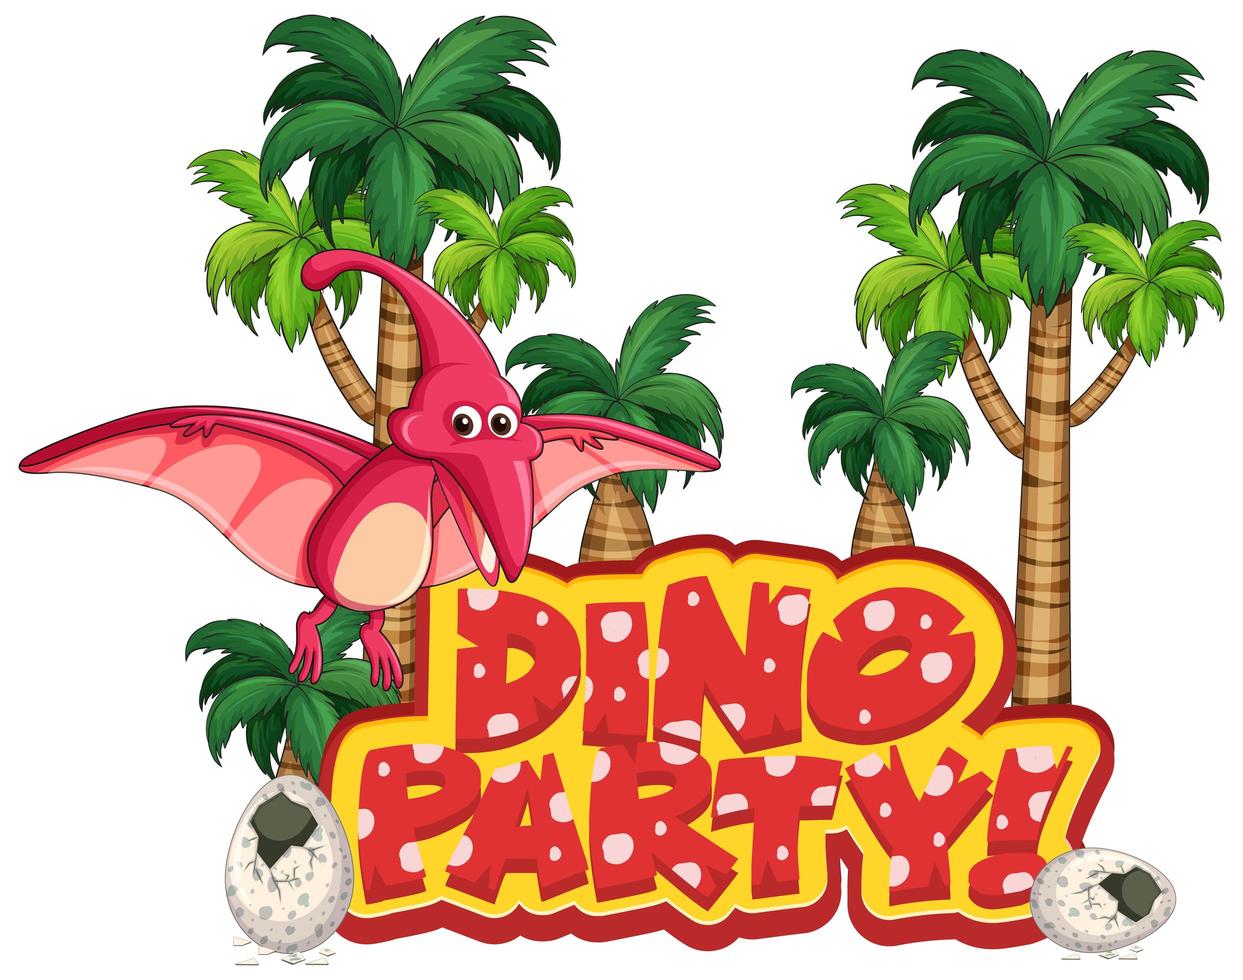 teckensnittsdesign för ordet dino party med pteranodon flyger vektor